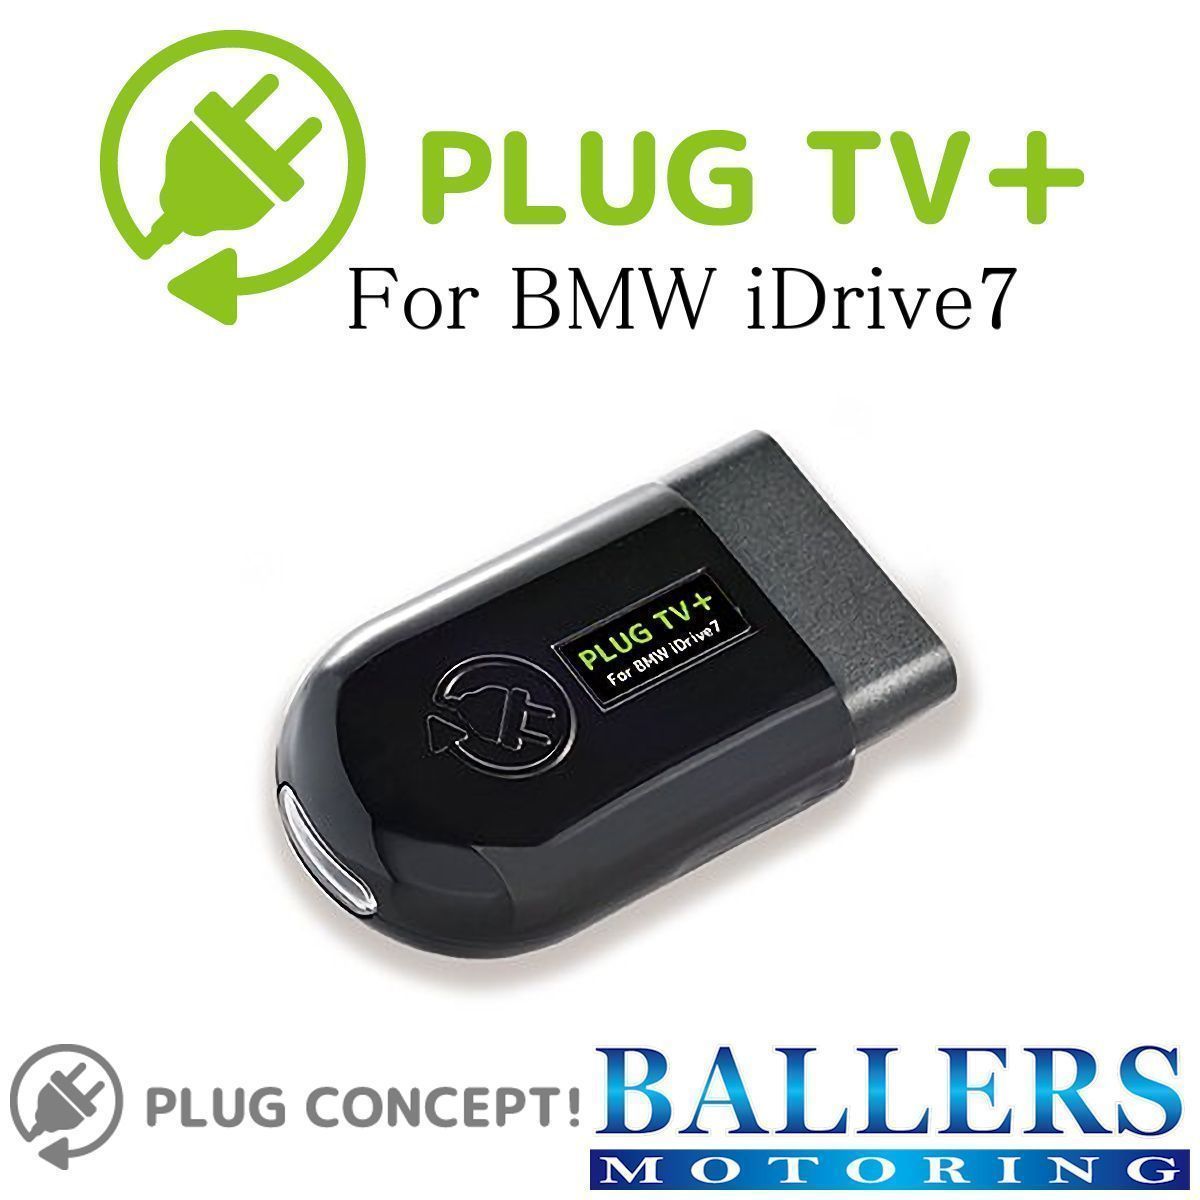 PLUG TV+ BMW G30 G31 F90 5シリーズ M5 テレビキャンセラー 差し込むだけで設定完了！ iDrive 7 コーディング ソフトウェア タイプ 日本製